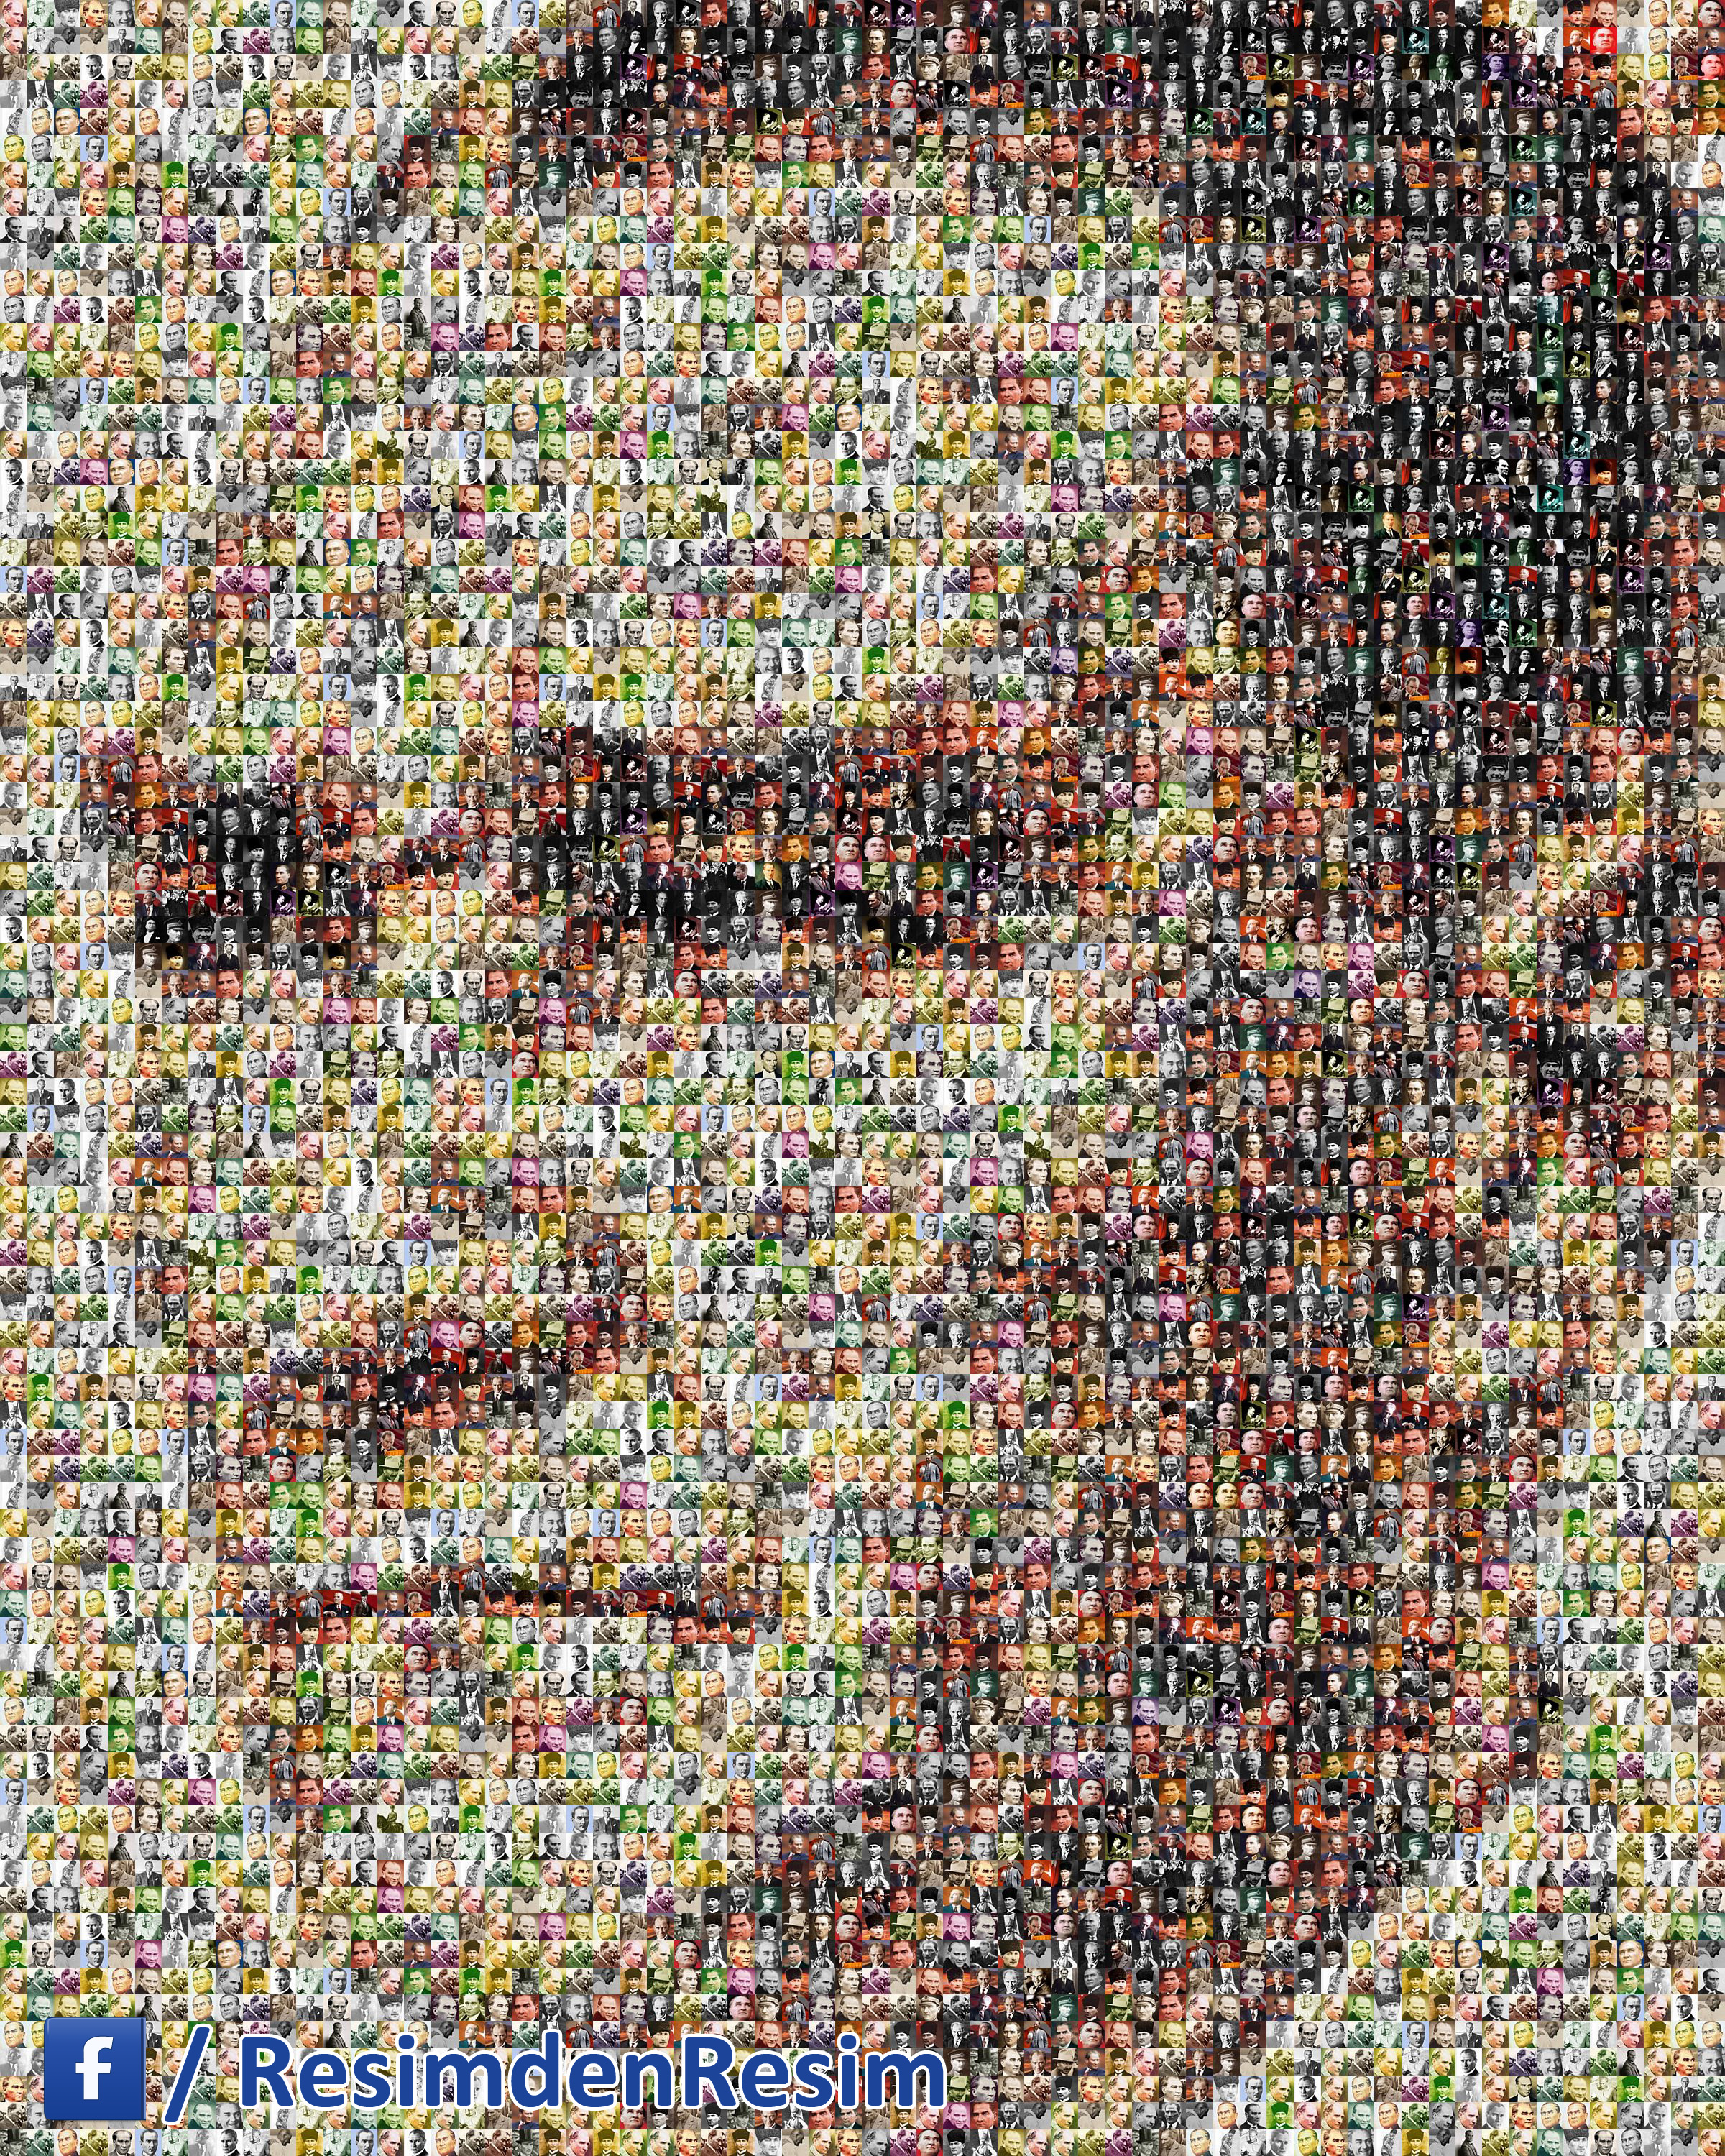 Binlerce Atatürk resminden oluşan Atatürk Resimden Resim çalışması'